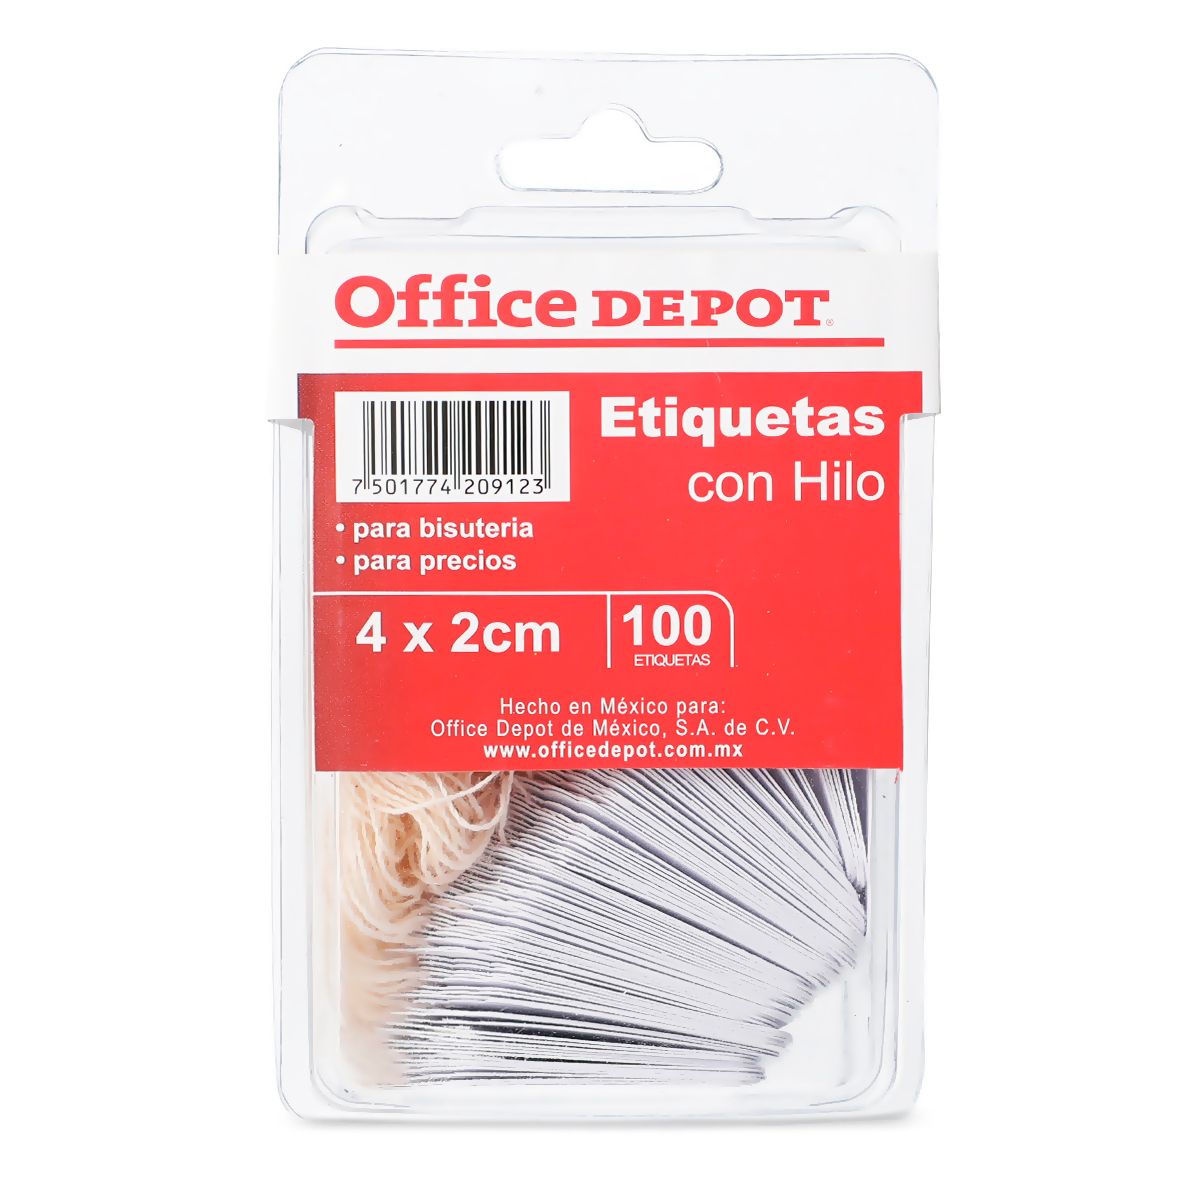 Etiquetas con Hilo Office 4 x 2 cm Blanco 100 piezas Office Depot Mexico